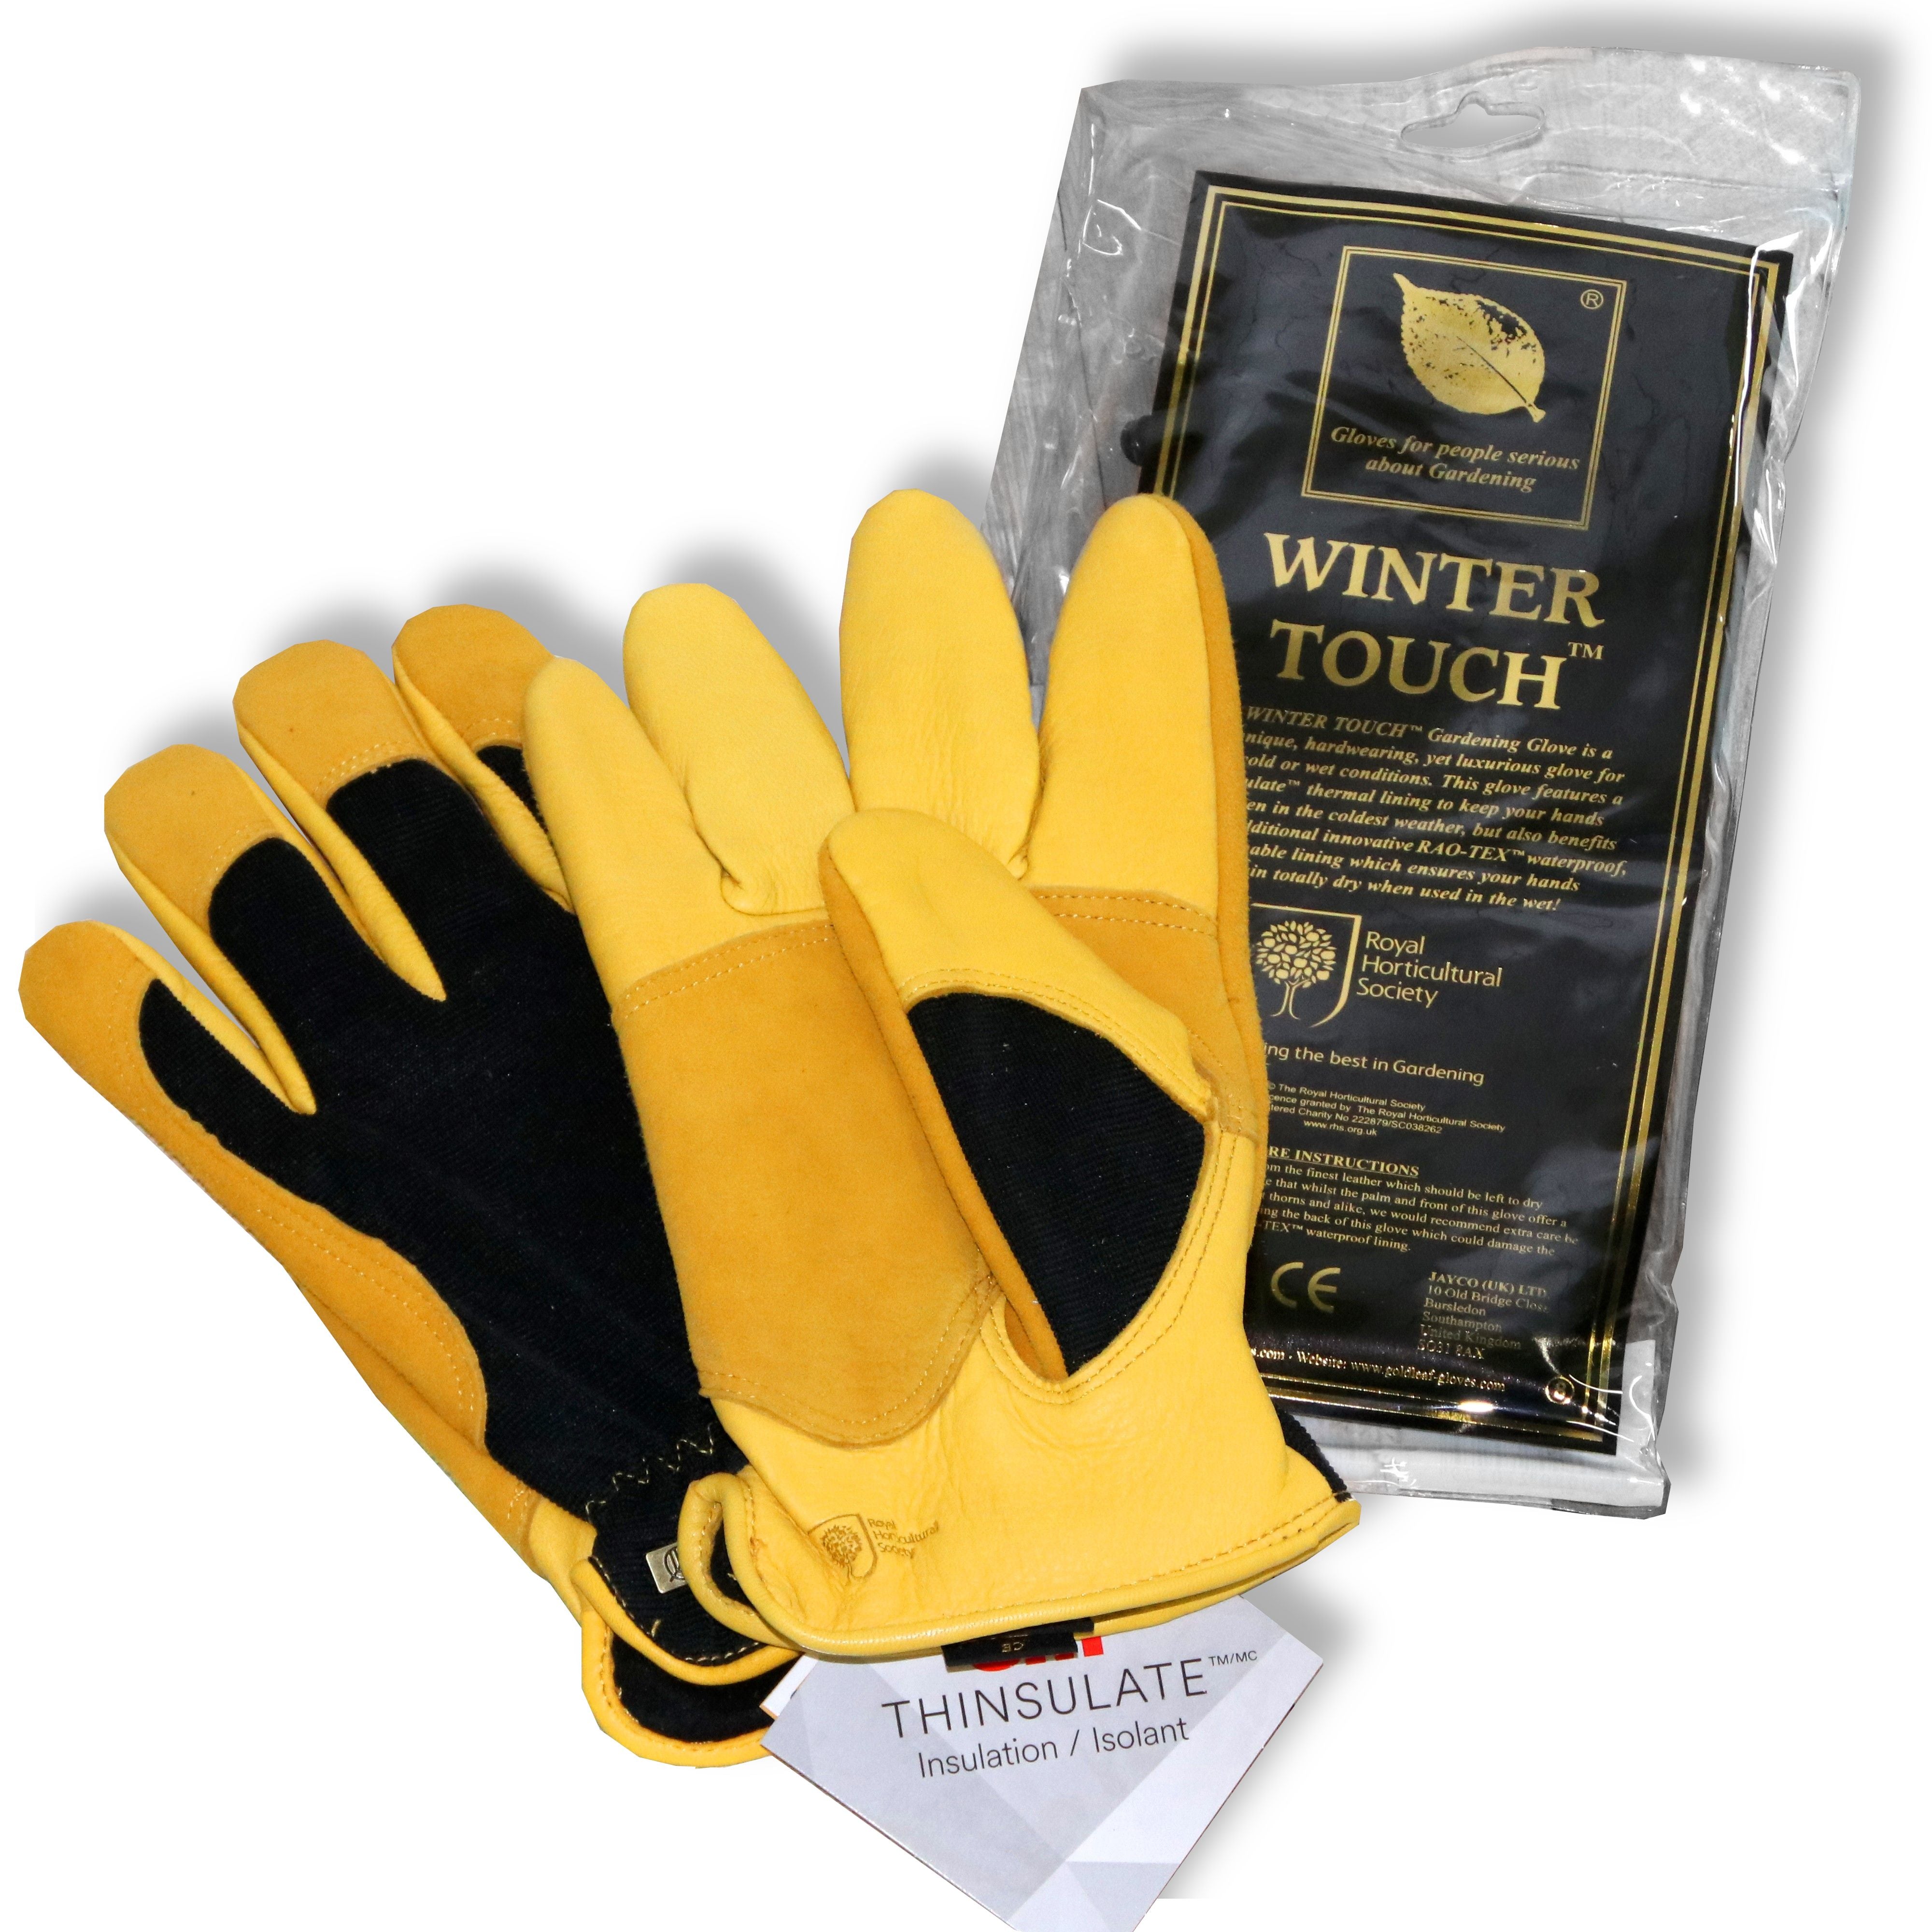 ジェイコ社 ウィンタータッチグローブ(メンズ) - Winter touch glove 